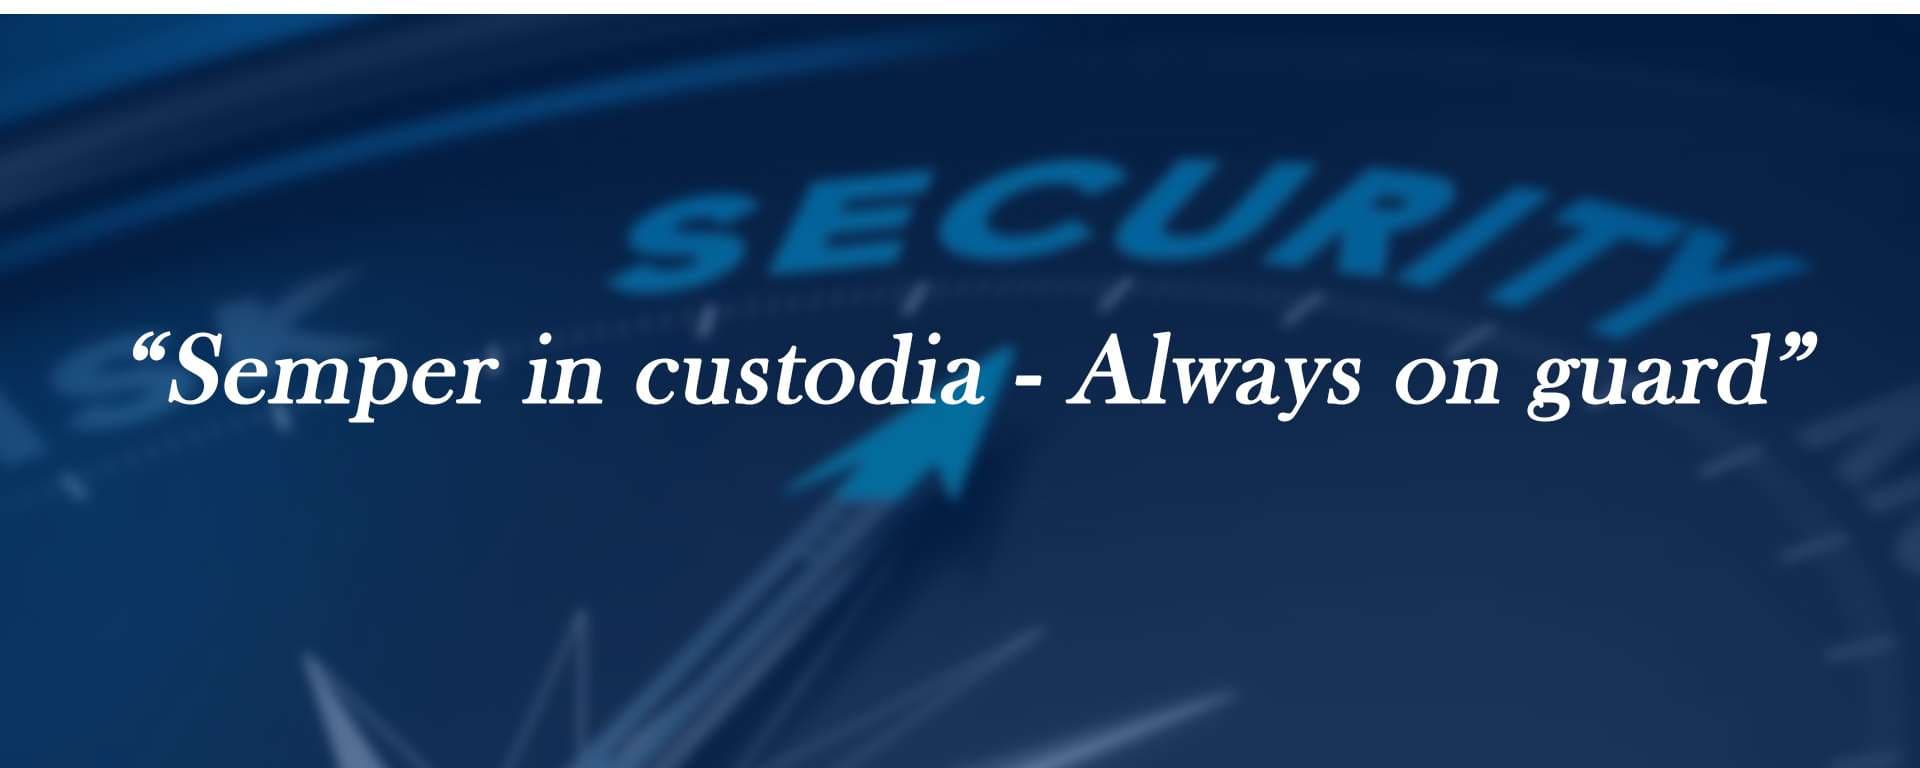 Executive Security Services